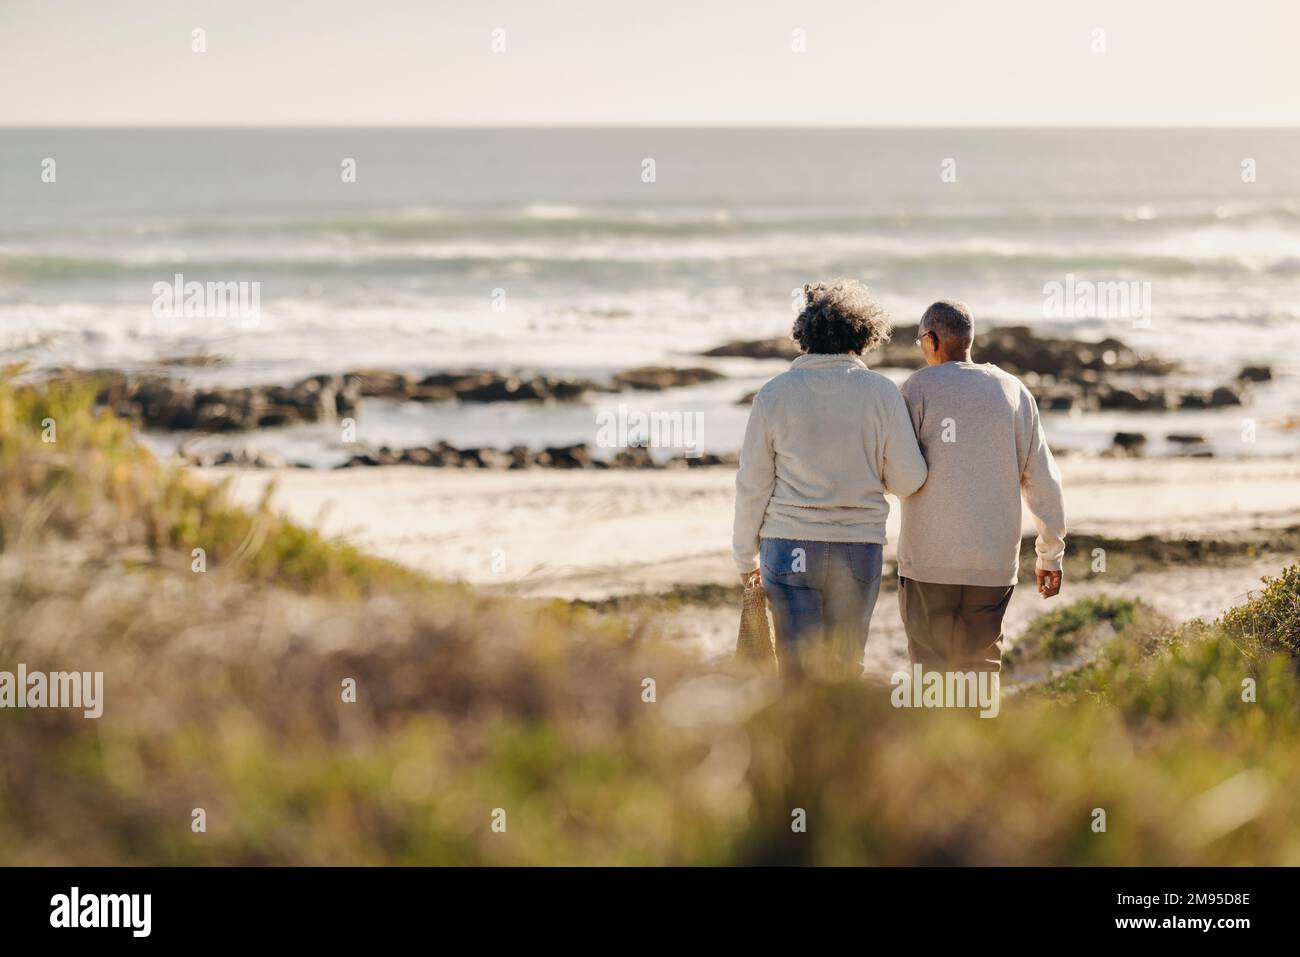 Vista posteriore di una romantica coppia senior a piedi verso la spiaggia per un pic-nic. Coppia anziana spensierata che prende una vacanza di mare dopo il pensionamento. Foto Stock